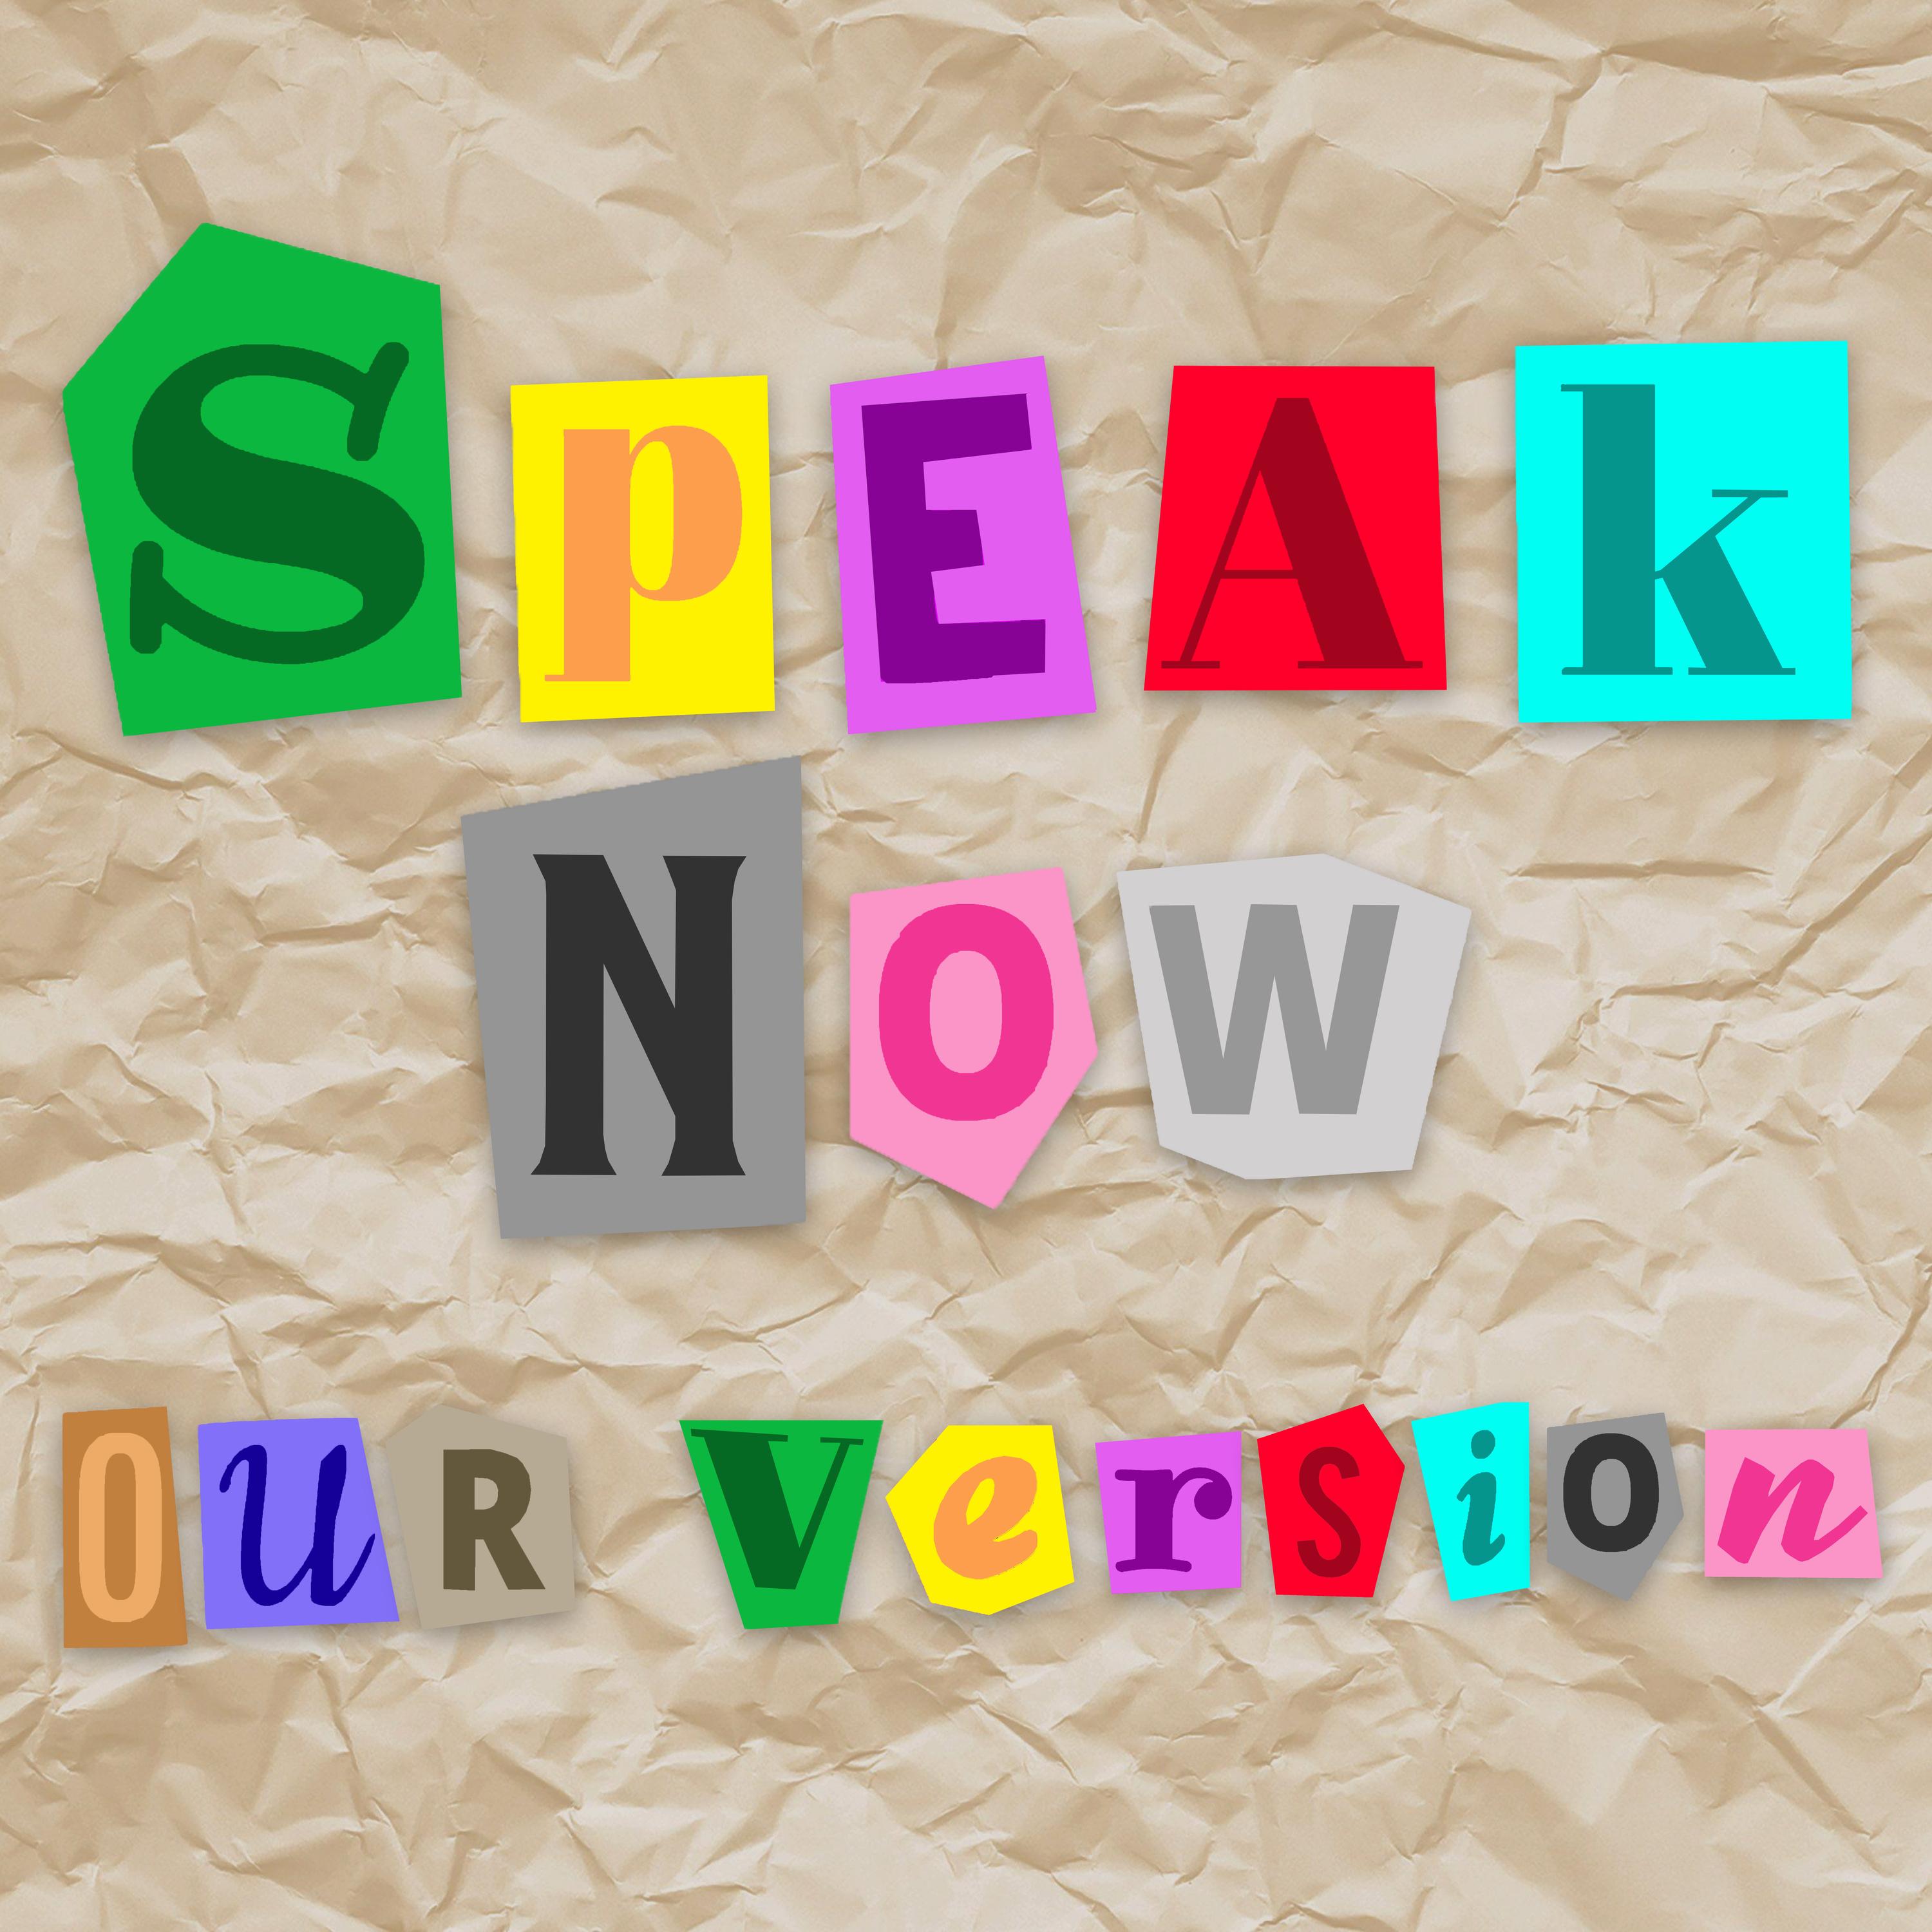 Speak Now (our version)